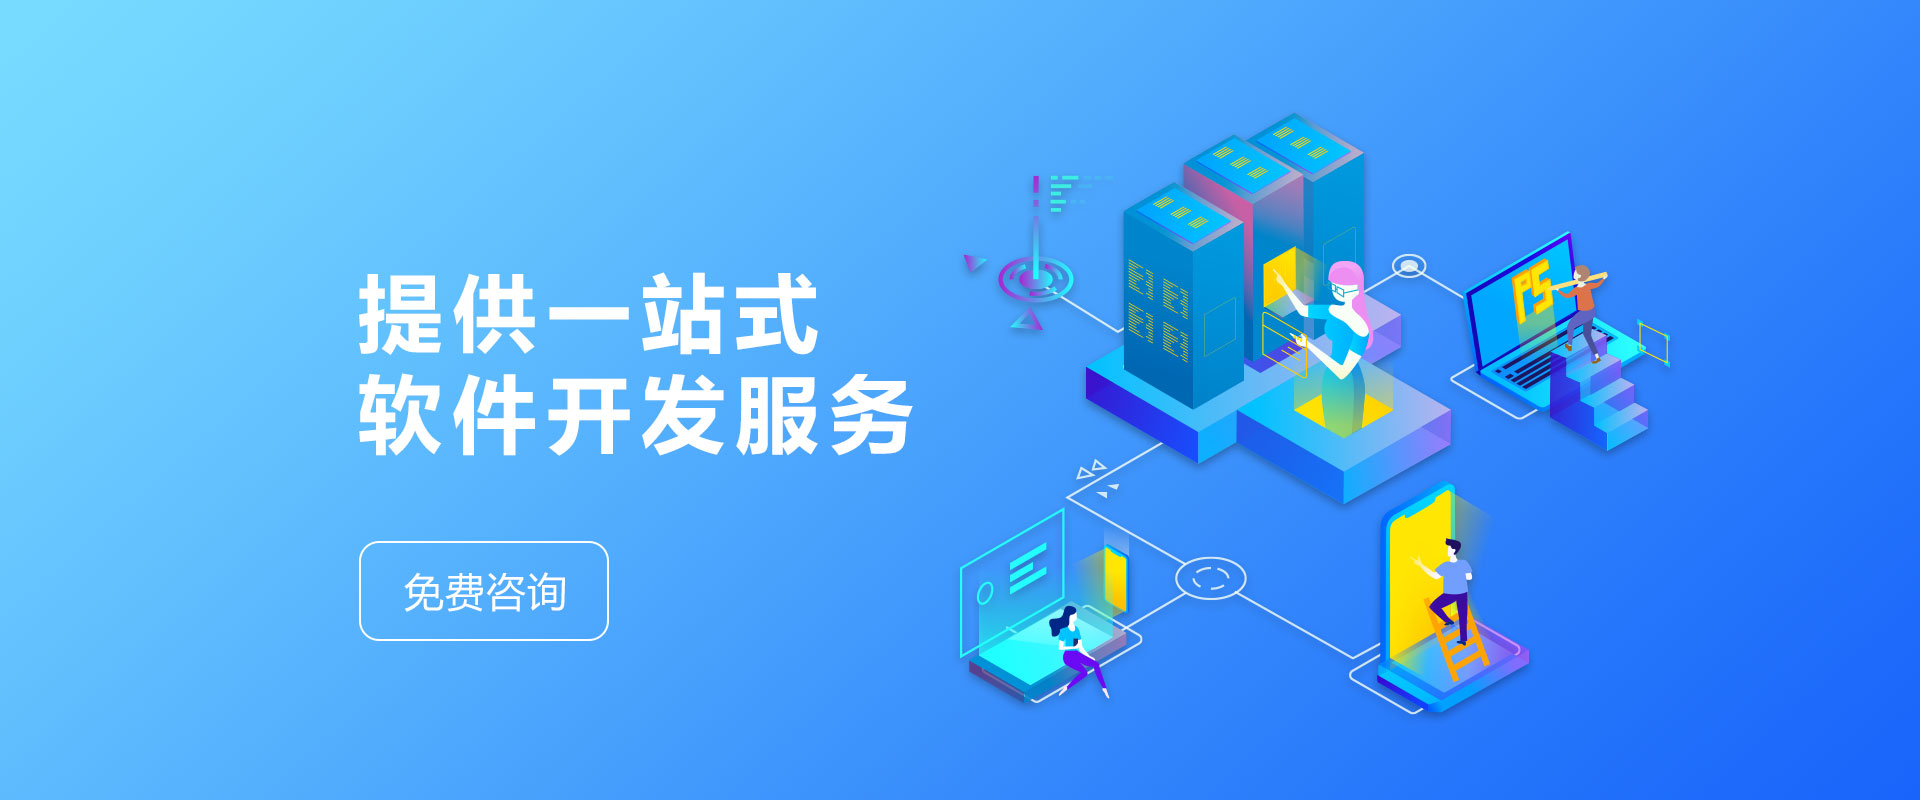 杭州软件开发杭州小程序开发杭州小程序定制杭州app软件开发公司